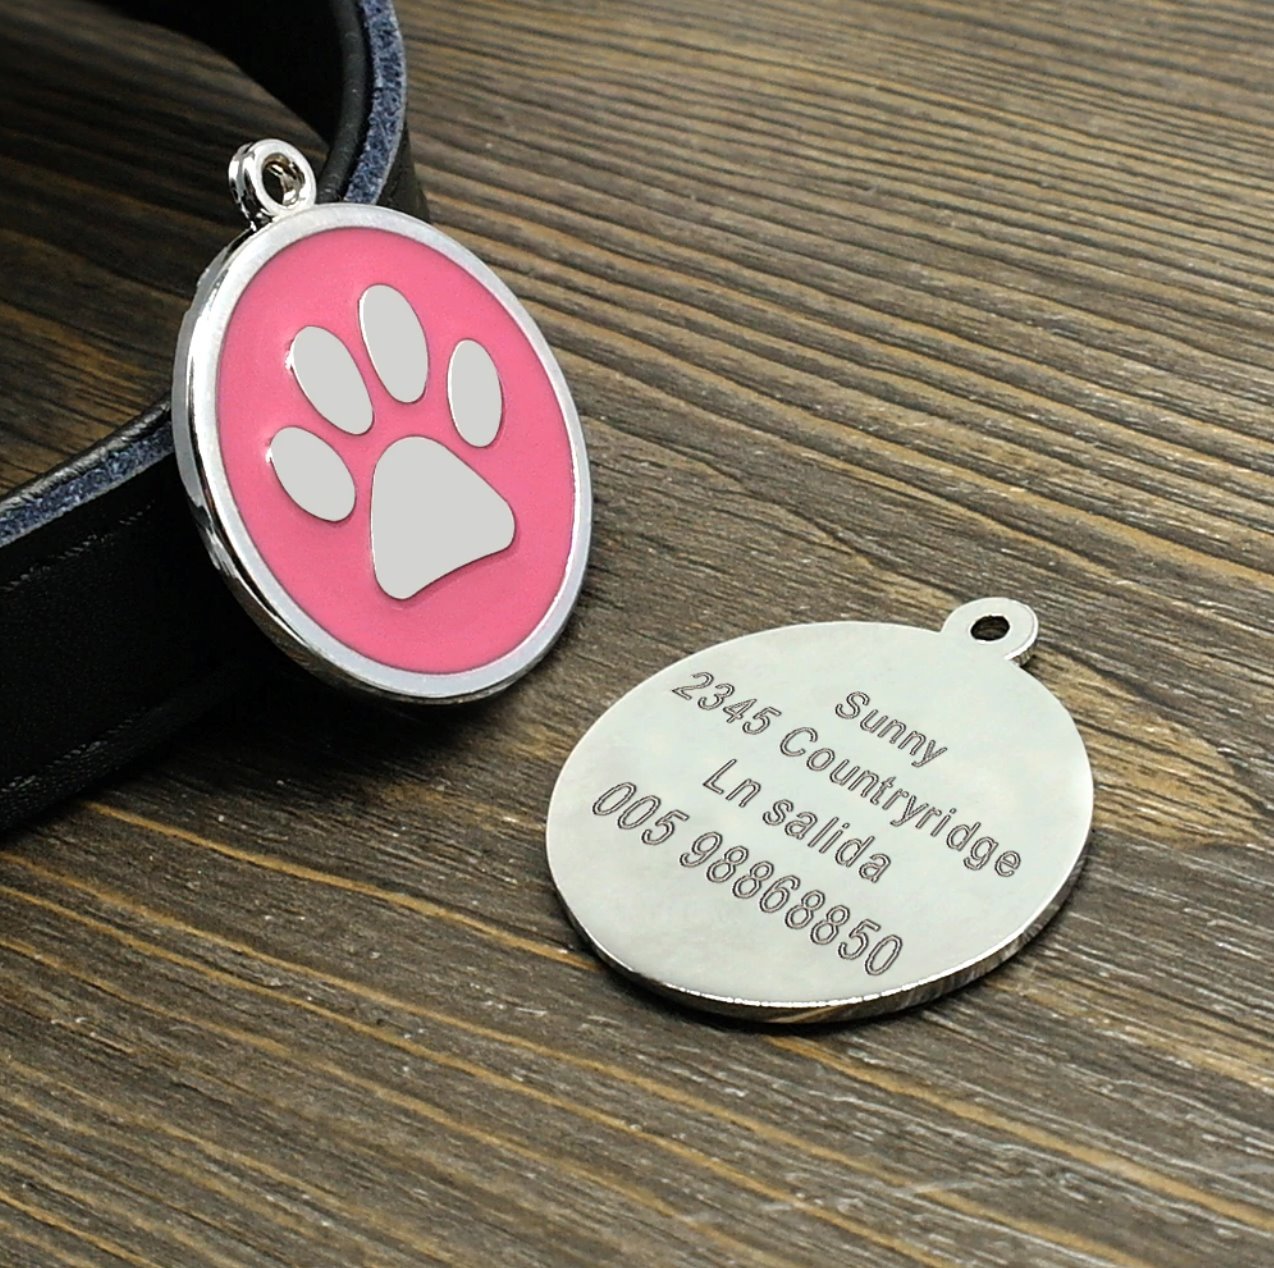 Personalised Engraved Pet ID Tag Pet ID Tags BestPet 